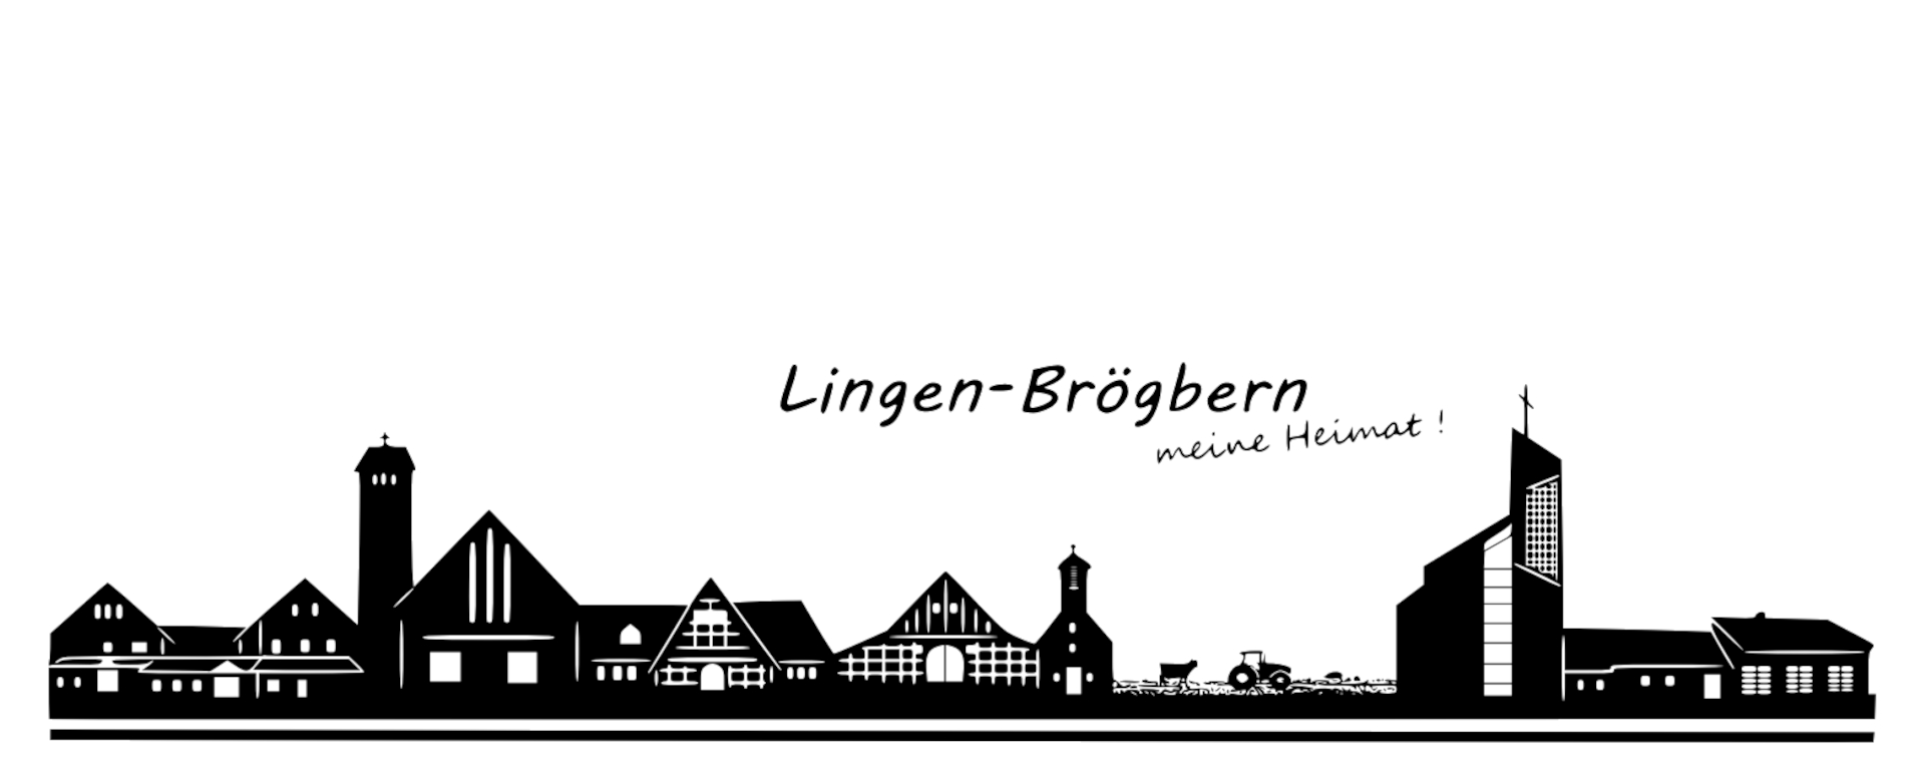 Lingen-Brgbern, meine Heimat!